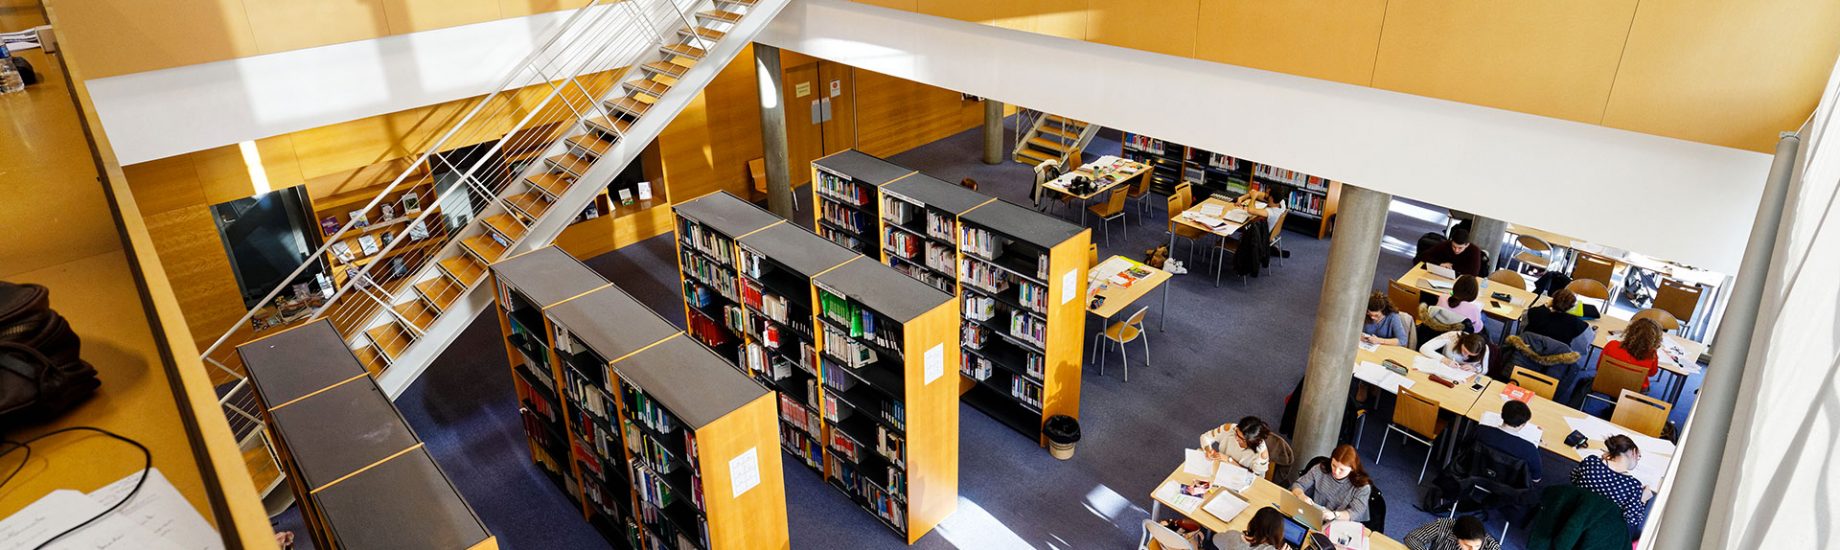 Bibliothèque Universitaire du campus de Martainville